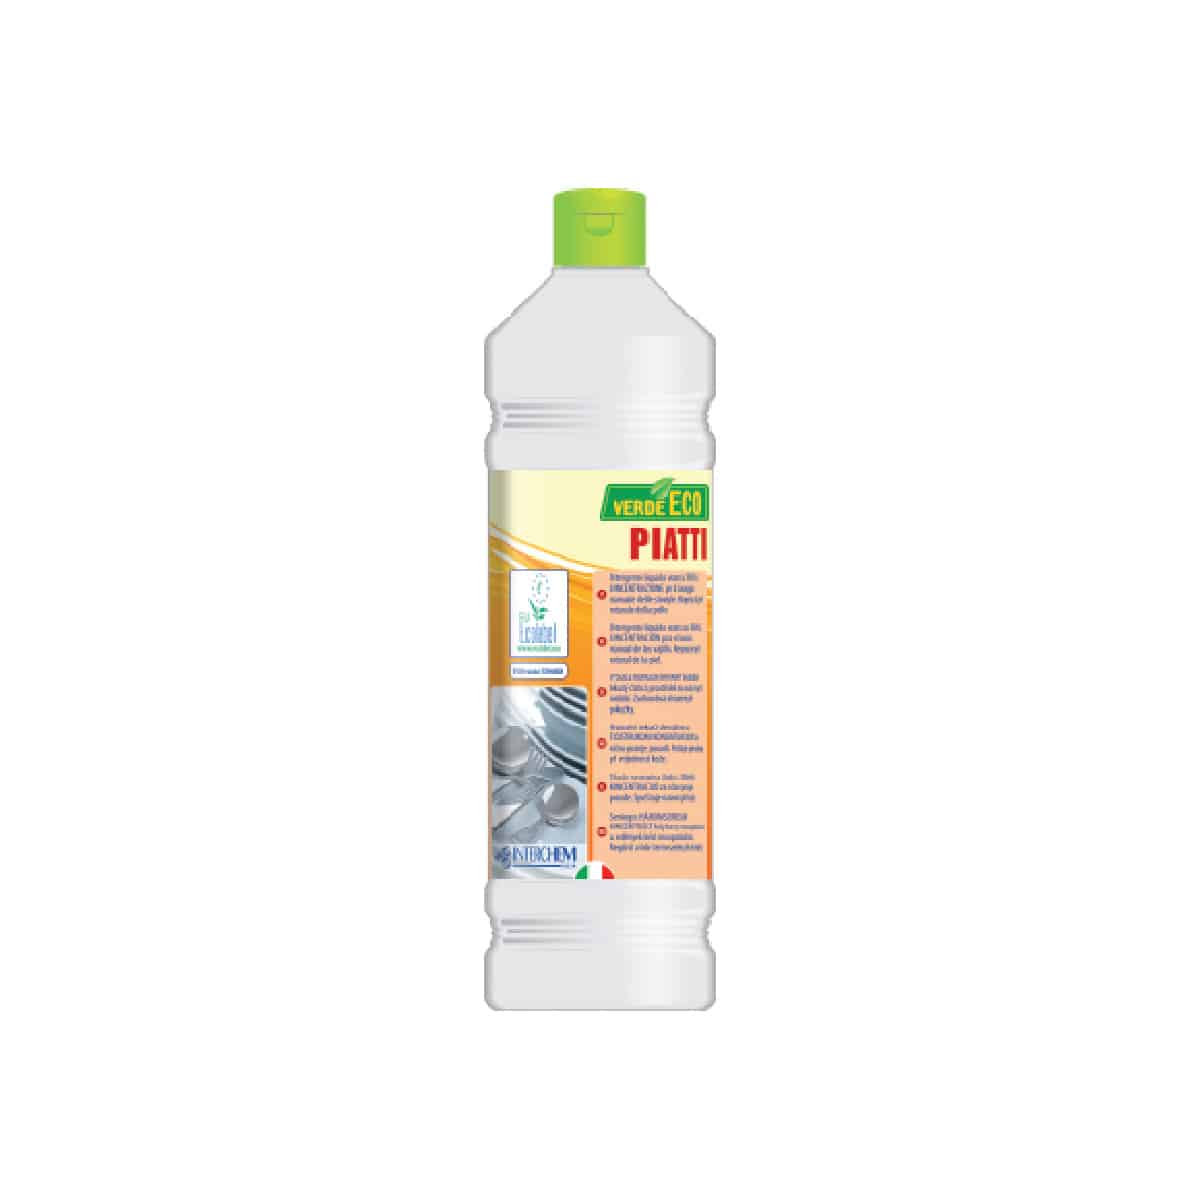 Detergente piatti Ecolabel concentrato 12pz